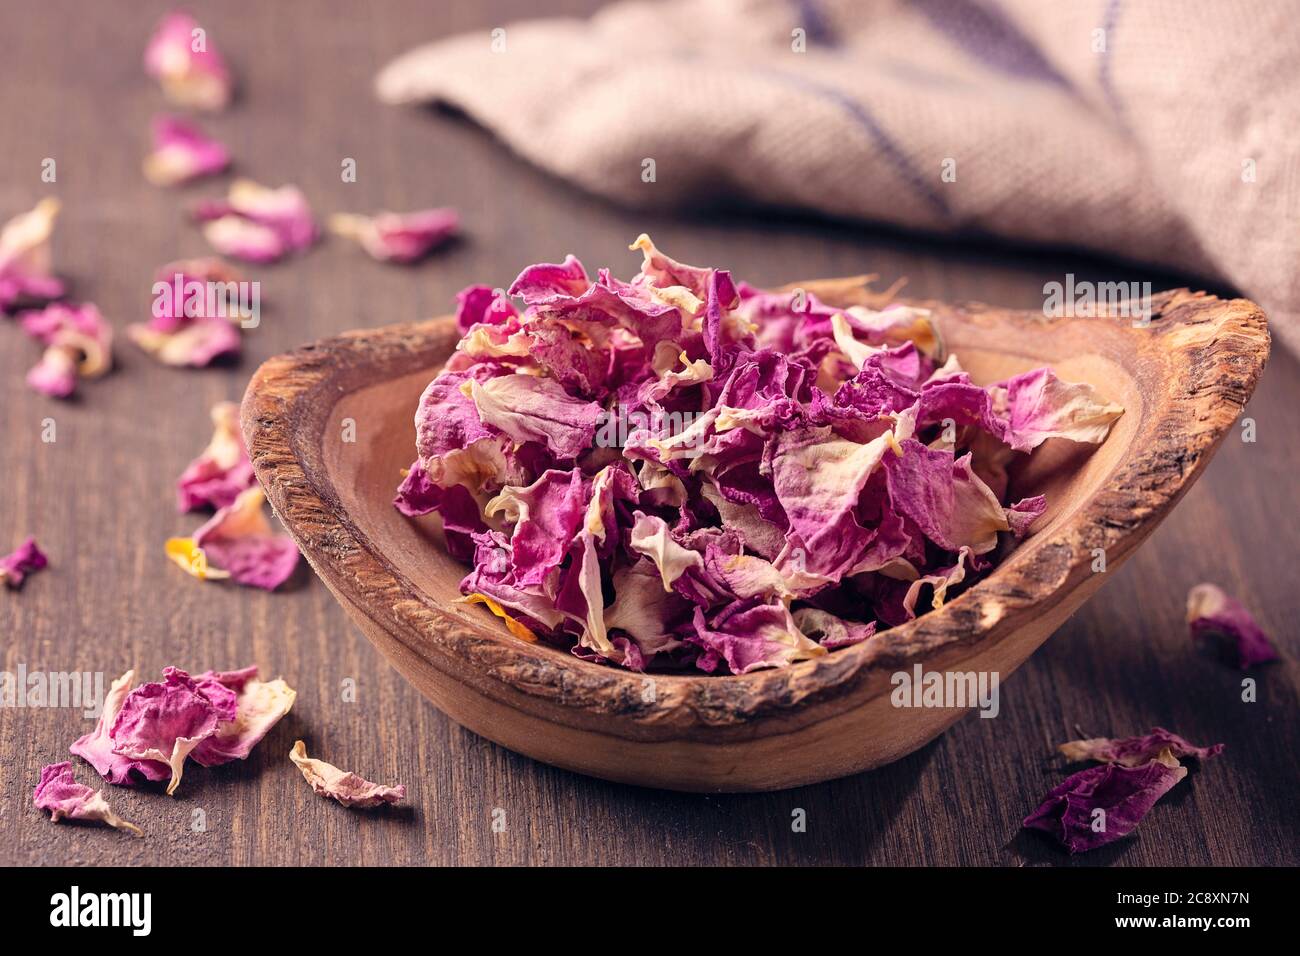 Petali di rosa secchi nella ciotola Foto Stock